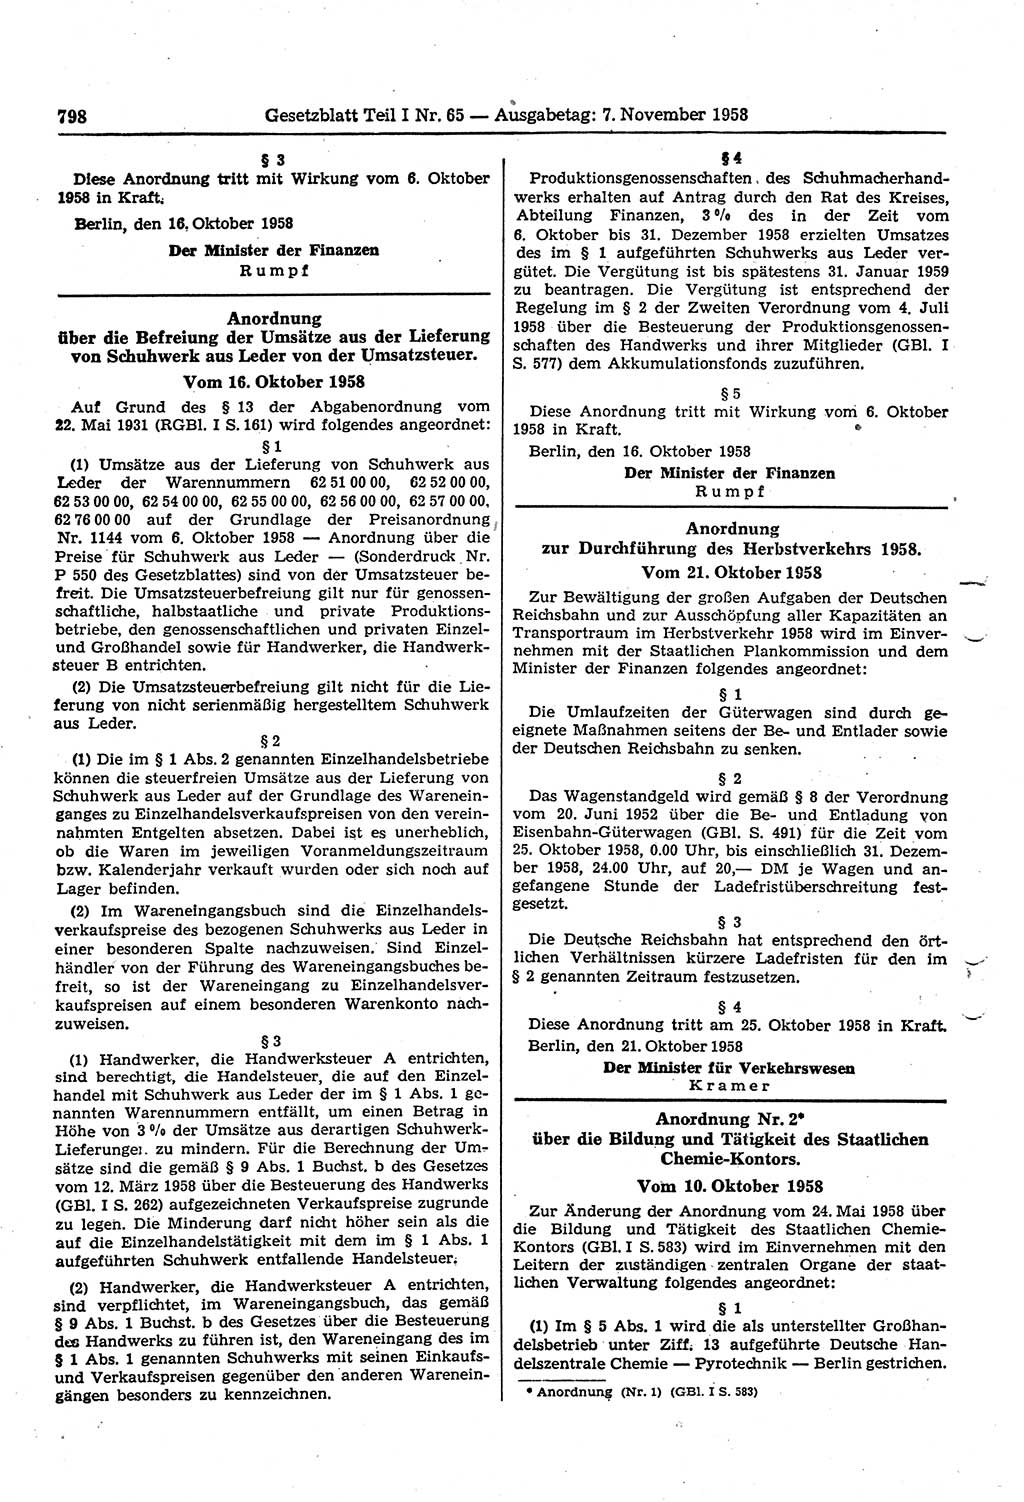 Gesetzblatt (GBl.) der Deutschen Demokratischen Republik (DDR) Teil Ⅰ 1958, Seite 798 (GBl. DDR Ⅰ 1958, S. 798)